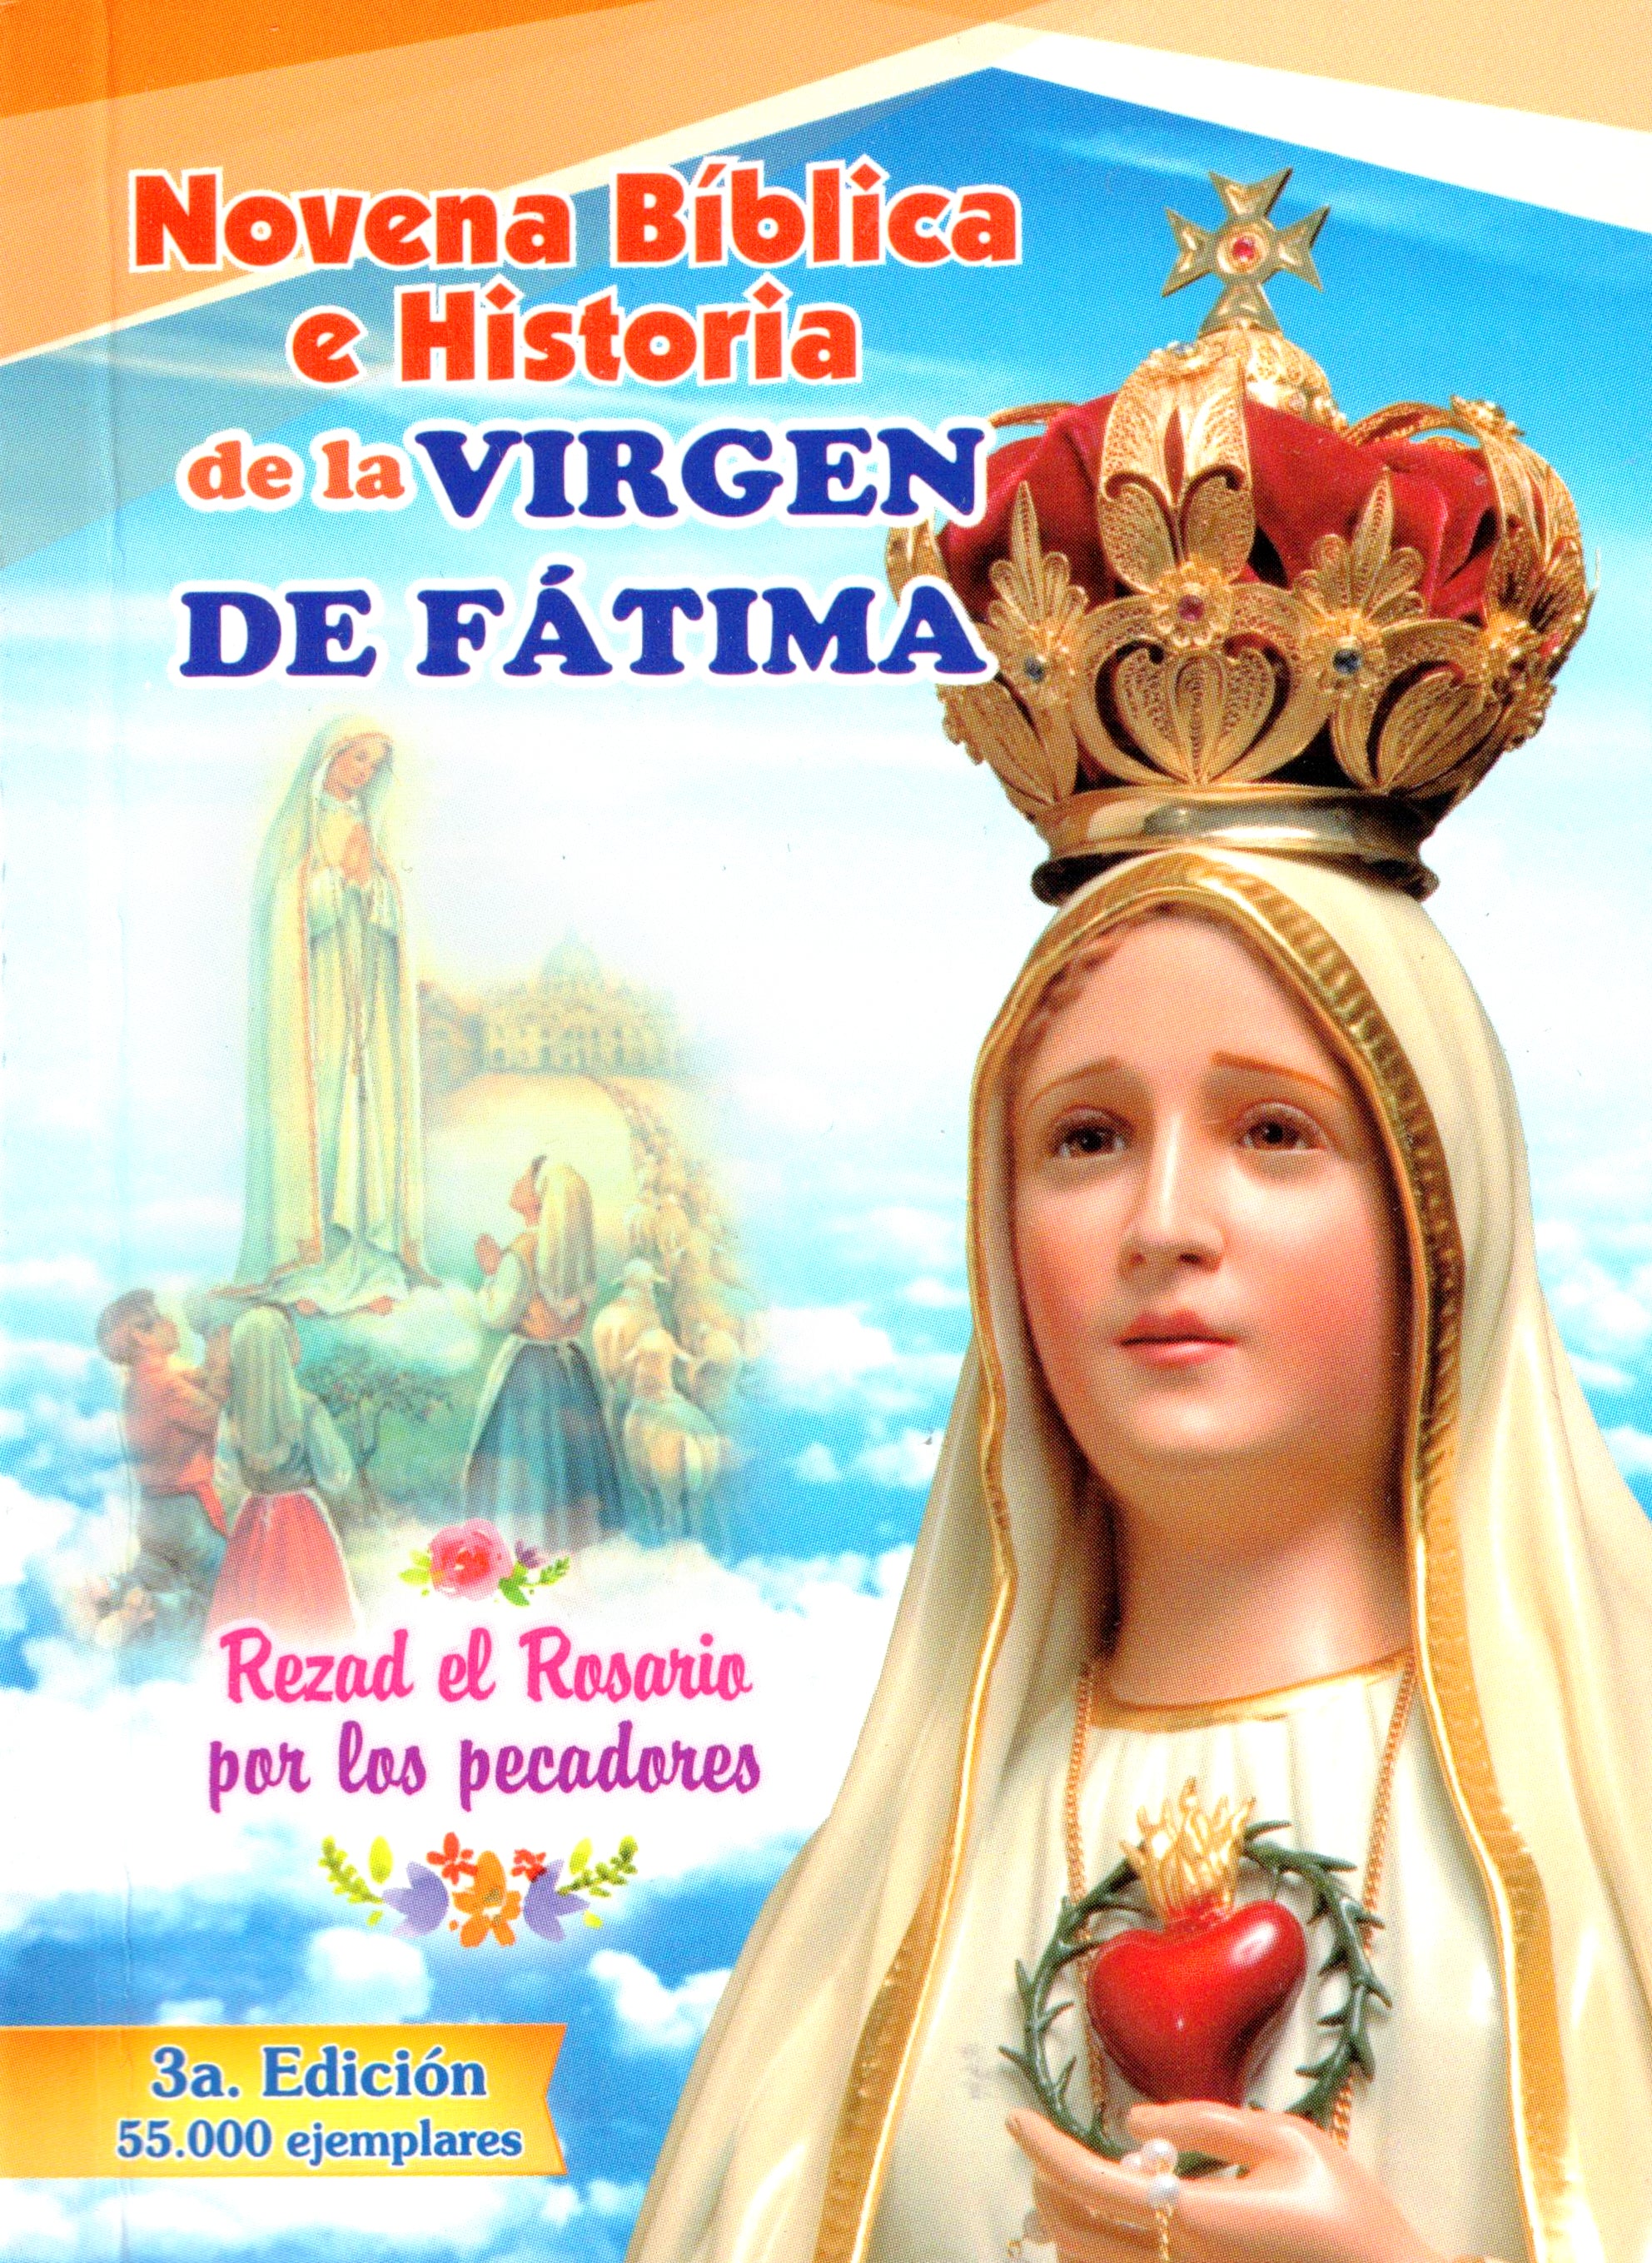 Novena Bíblica e Historia de la Virgen de Fátima